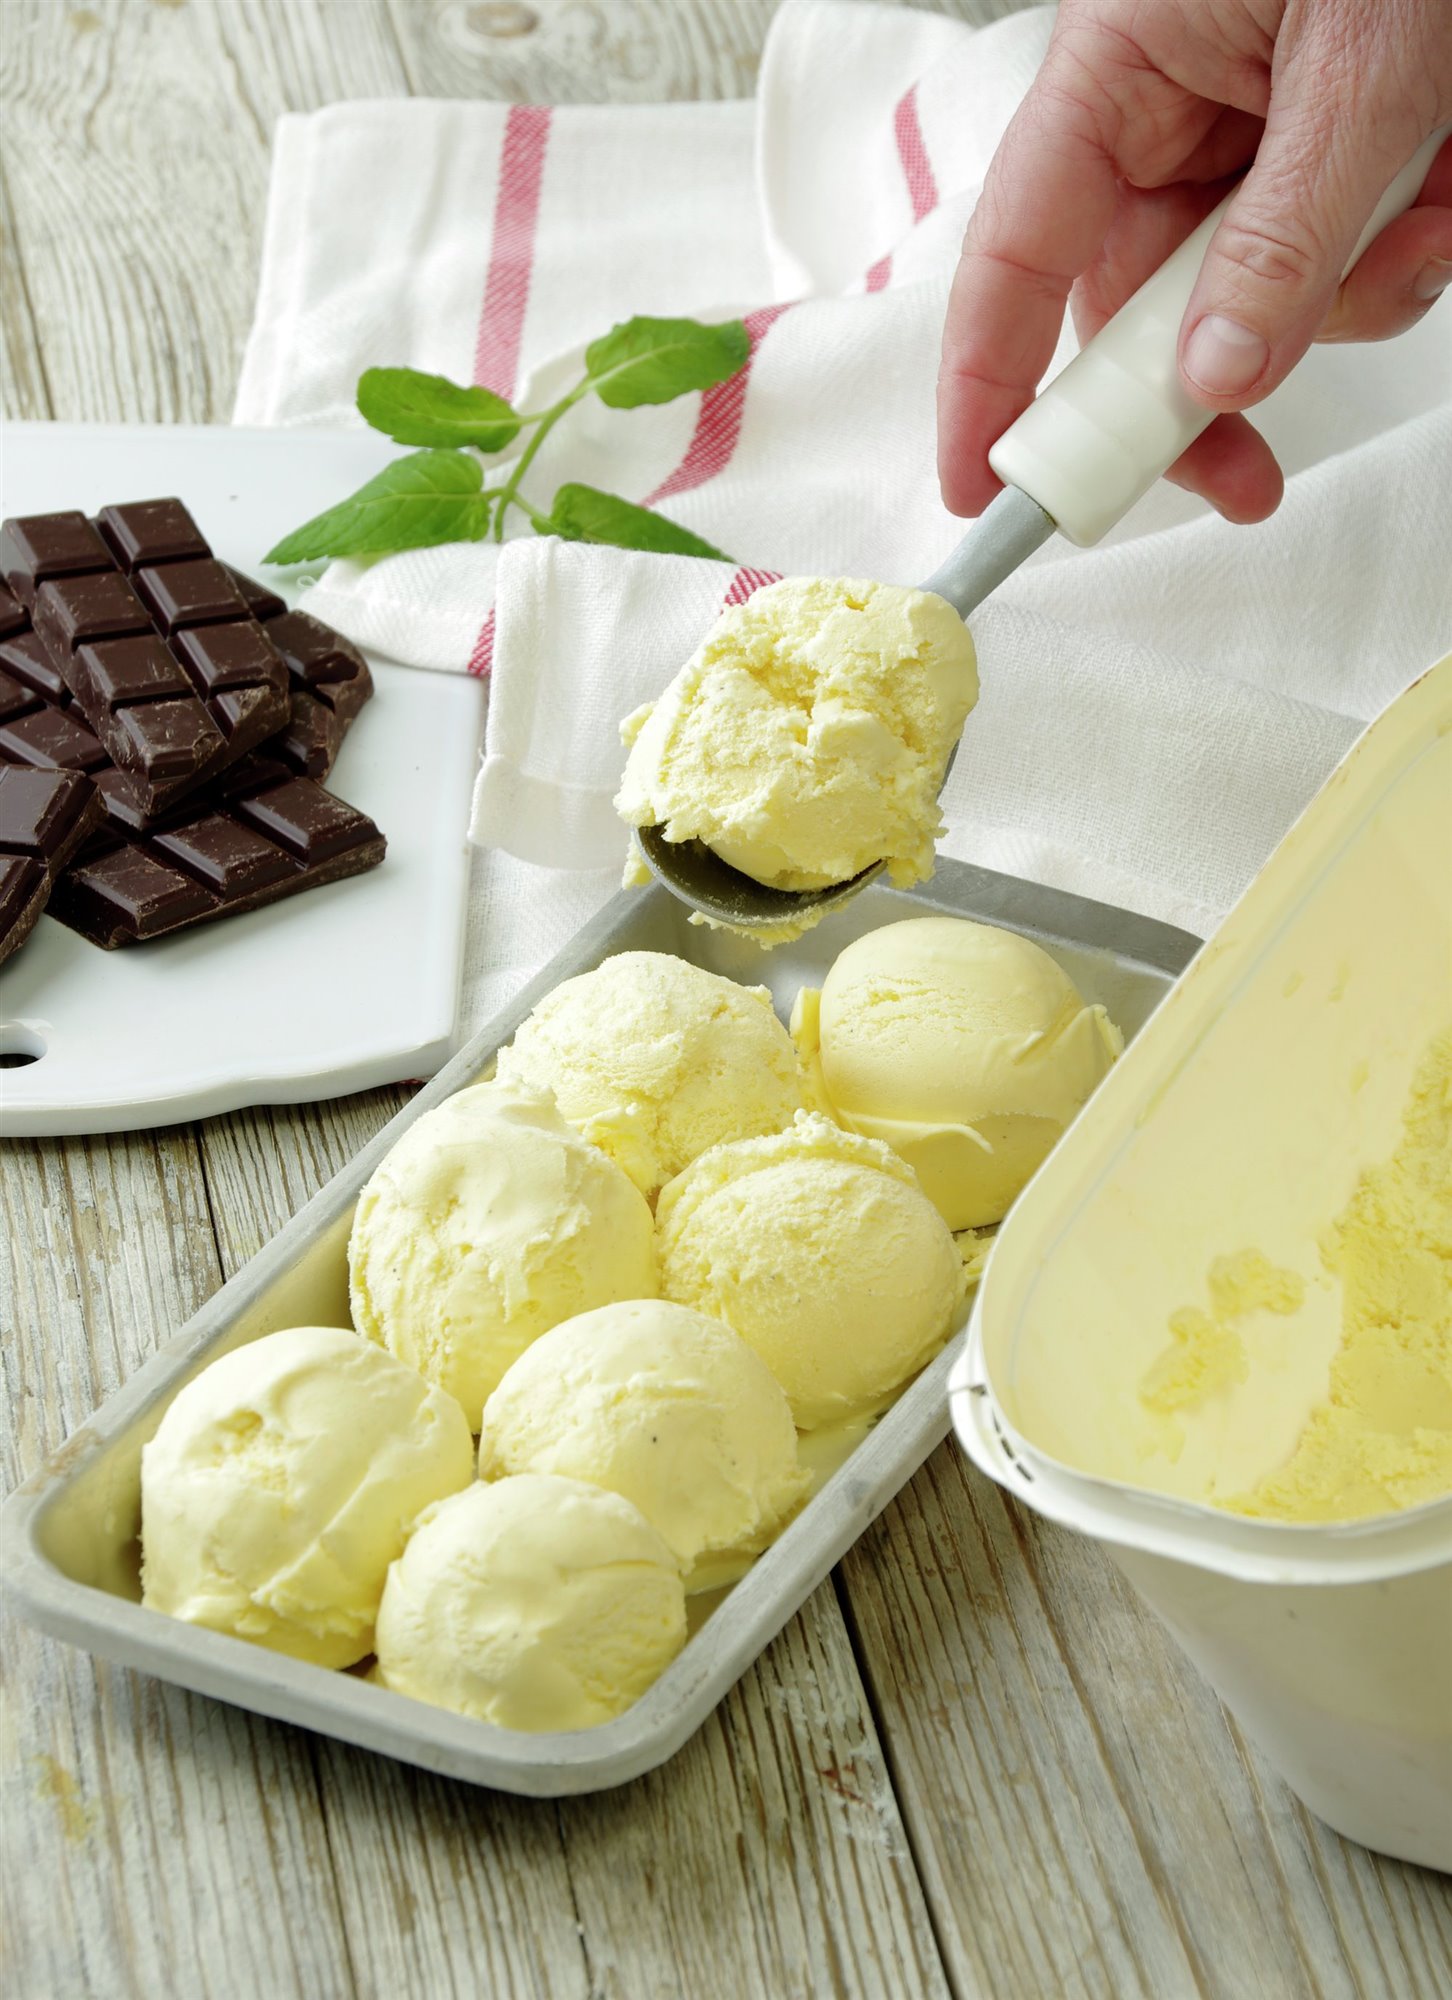 2. Prepara el helado de vainilla